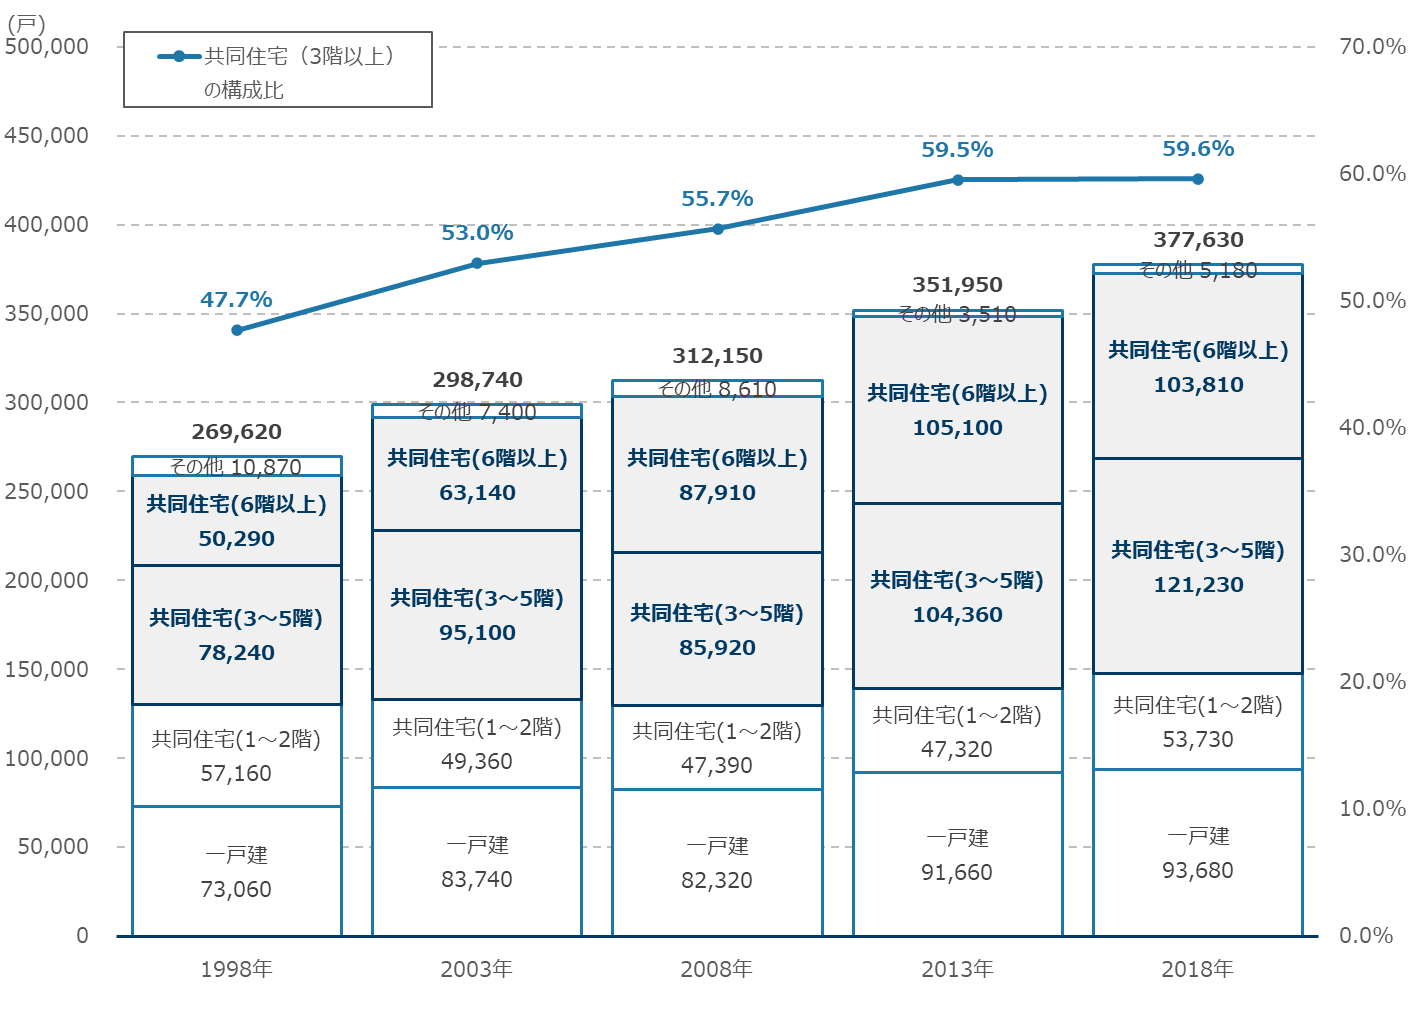 大田区における建て方別住宅戸数の推移